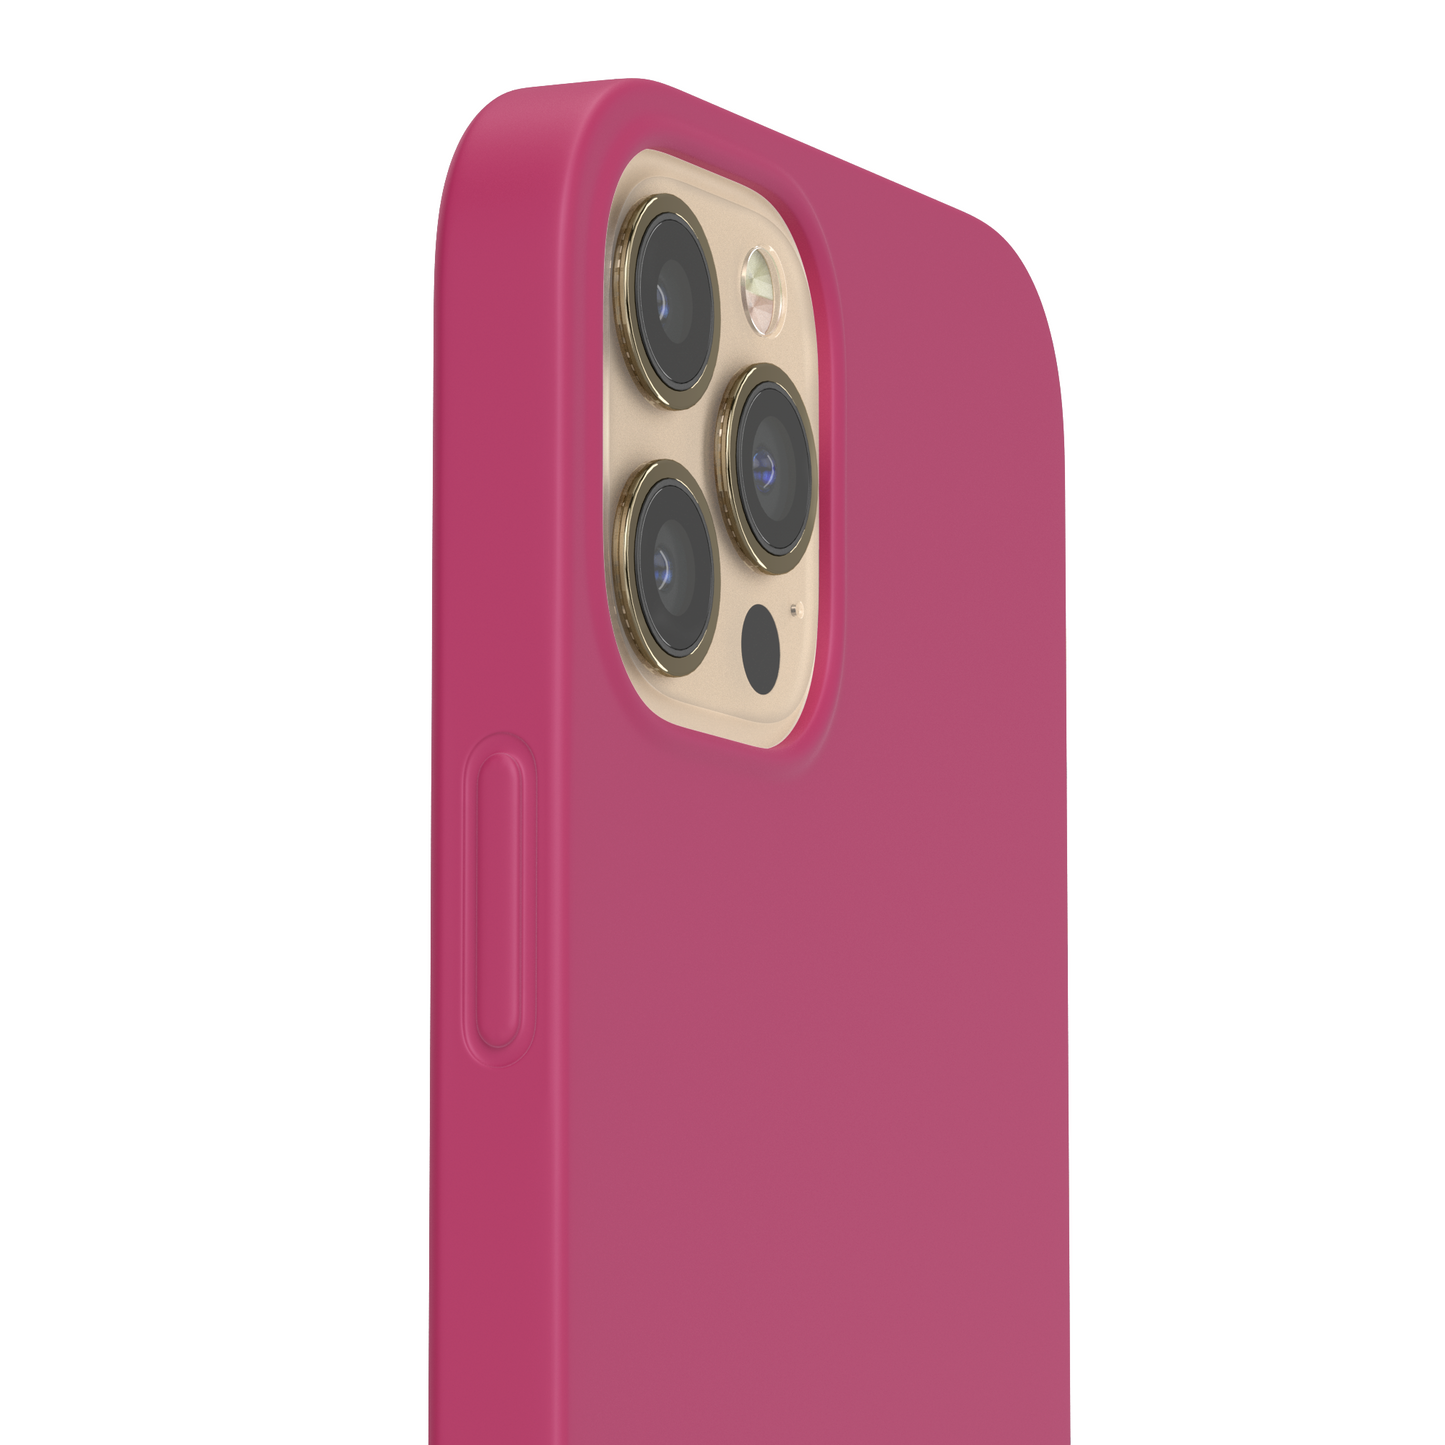 Joyful Raspberry iPhone Case